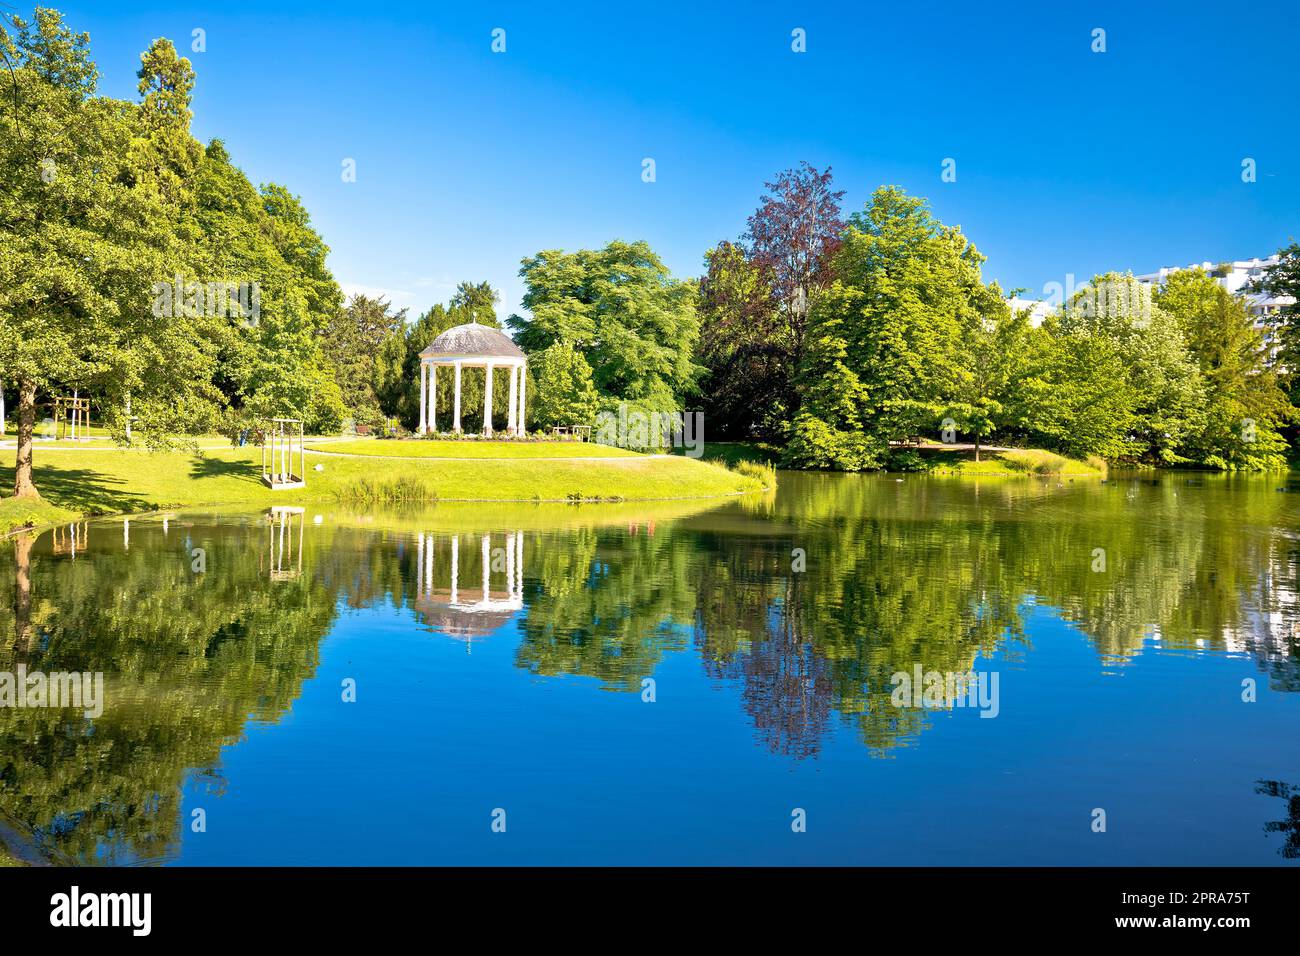 Park de la Orangerie scenic lake in Strasbourg view Stock Photo